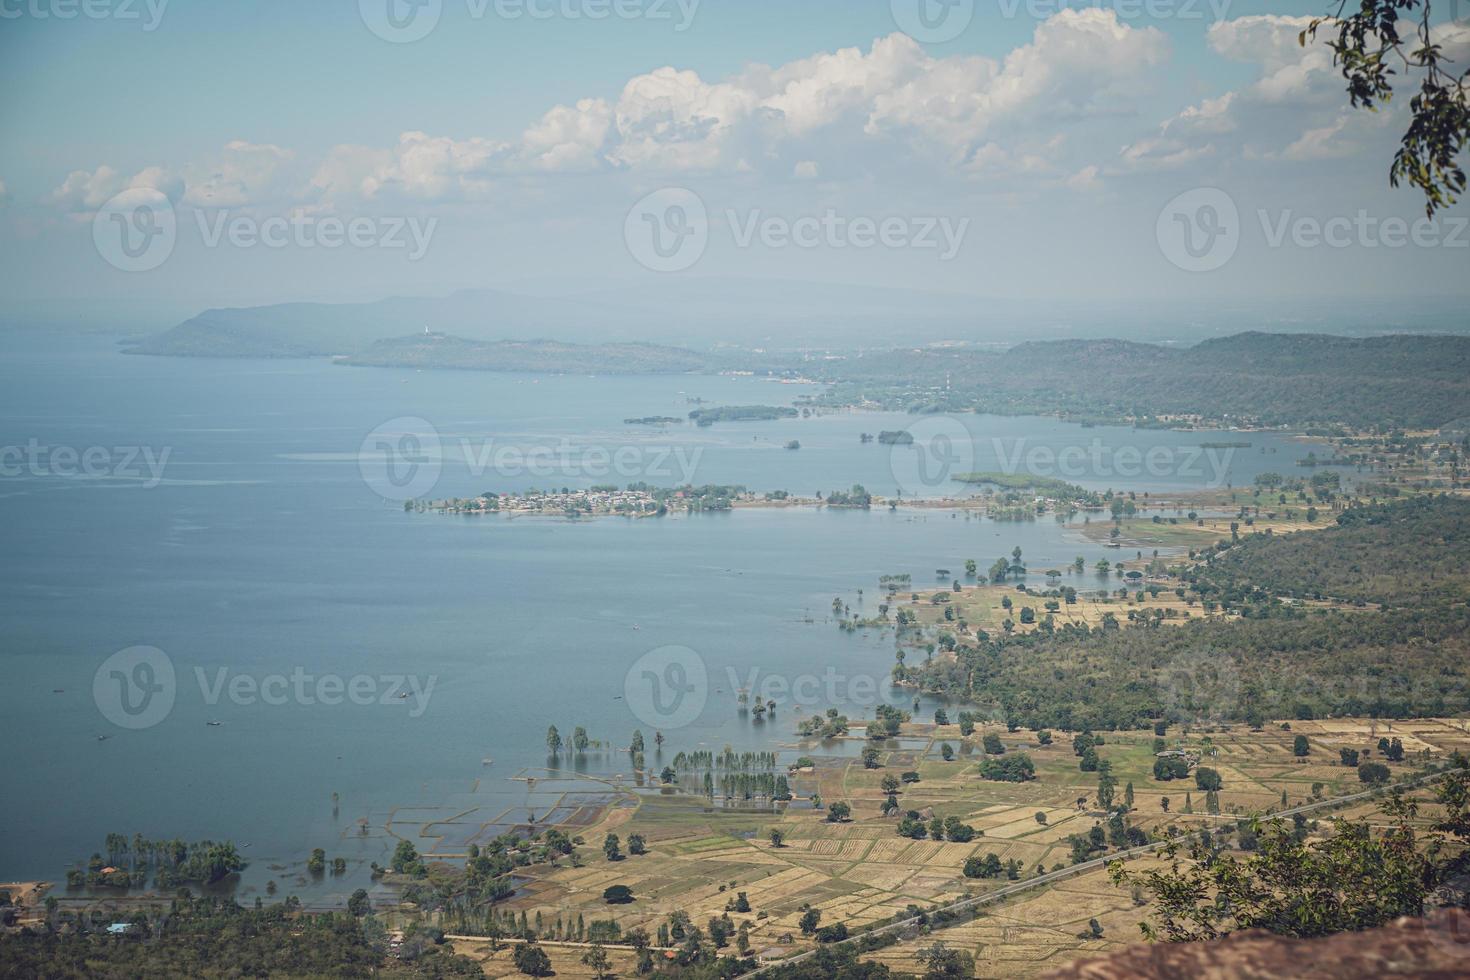 hin chang si punto de vista que puede ver el paisaje de la represa ubolratana debajo del cielo, montañas y lagos. foto